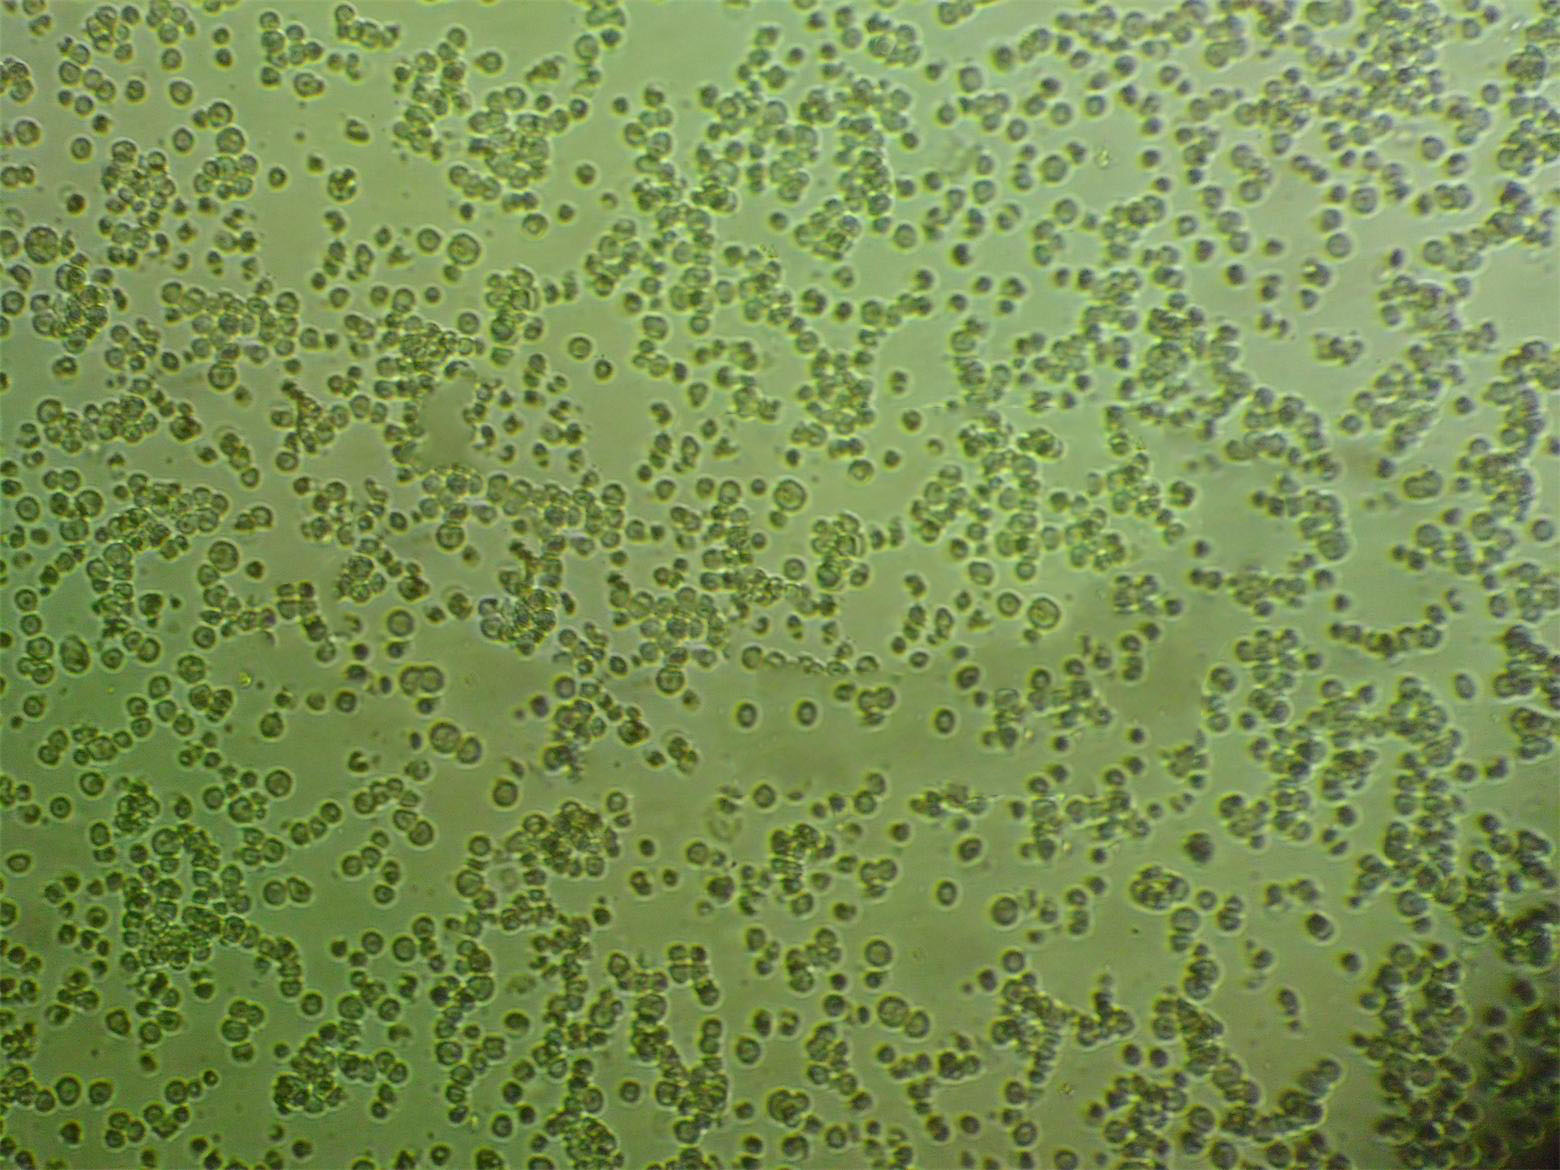 CCD-1112sk人包皮成纤维复苏细胞(附STR鉴定报告)